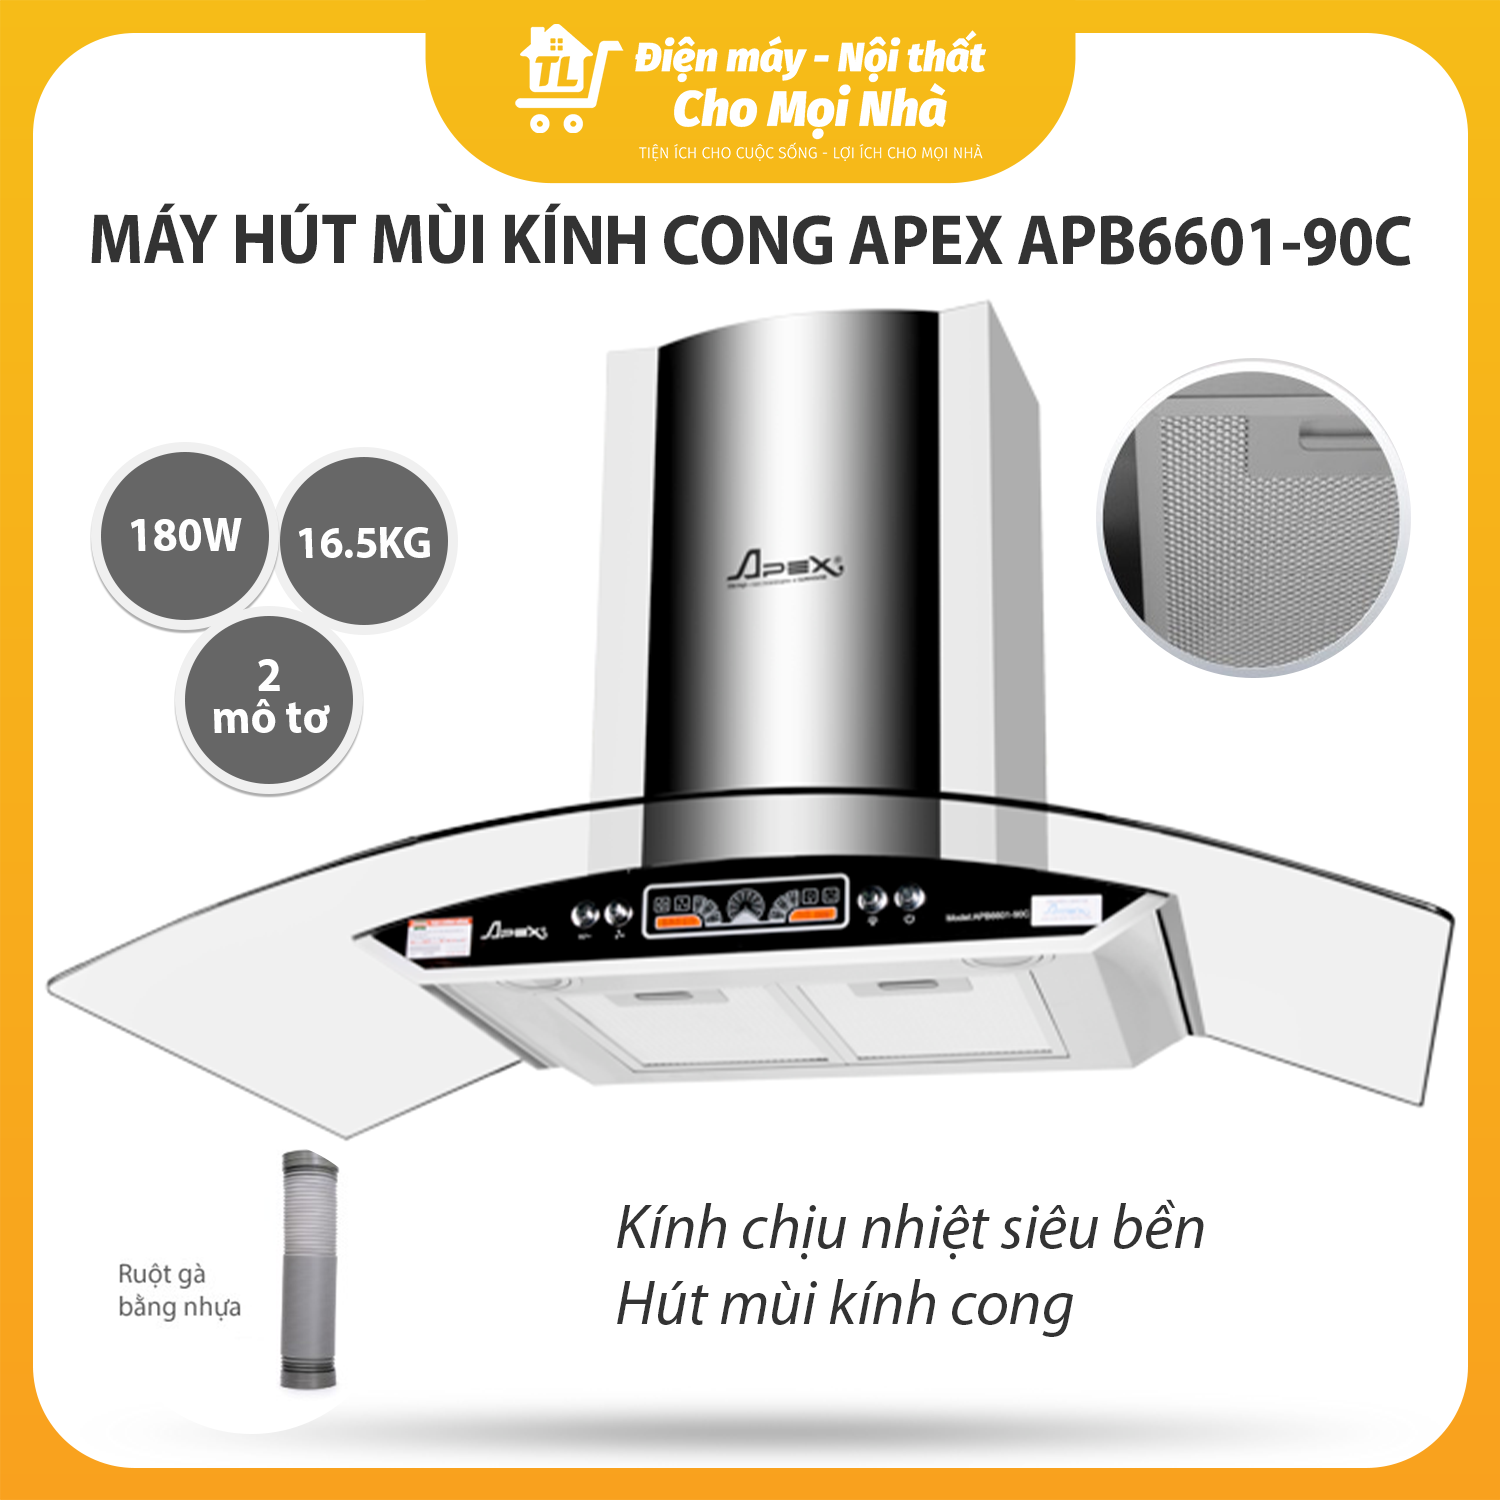 Máy Hút Mùi Kính Cong Sunhouse Apex APB6601-90C - Hàng chính hãng